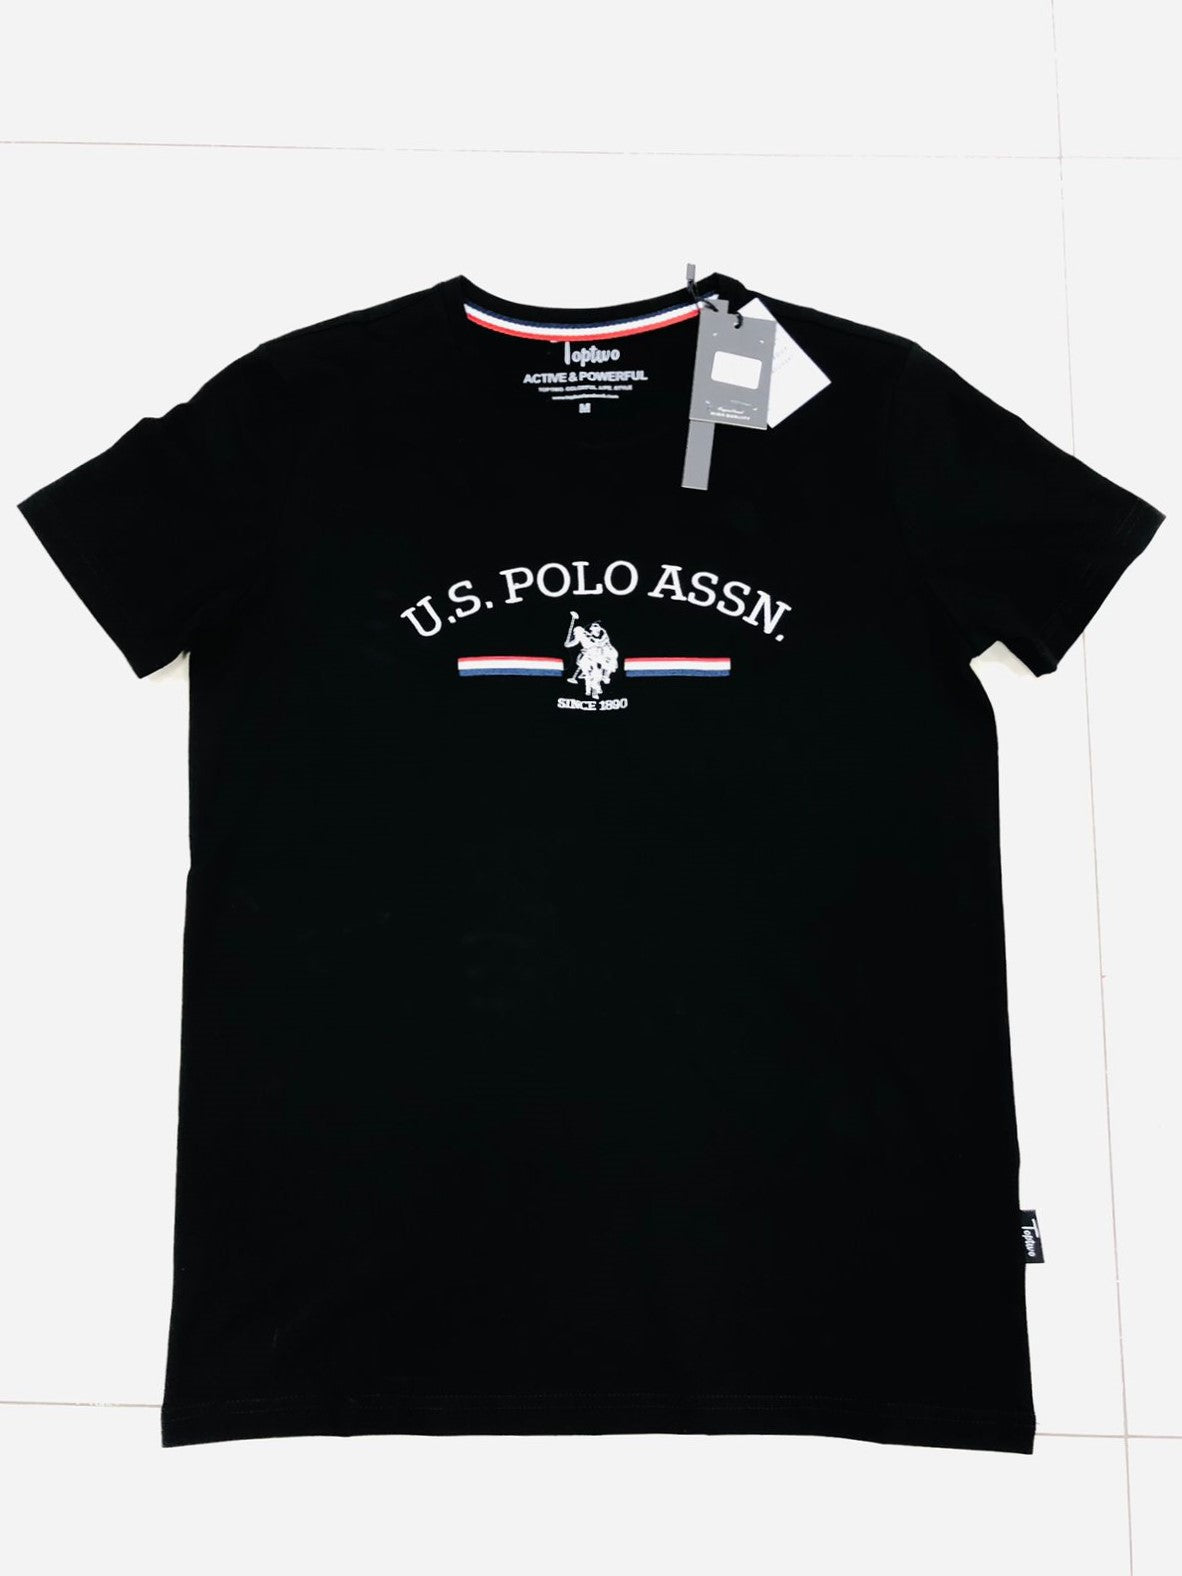 U.S. Polo Assn (T-Shirt)